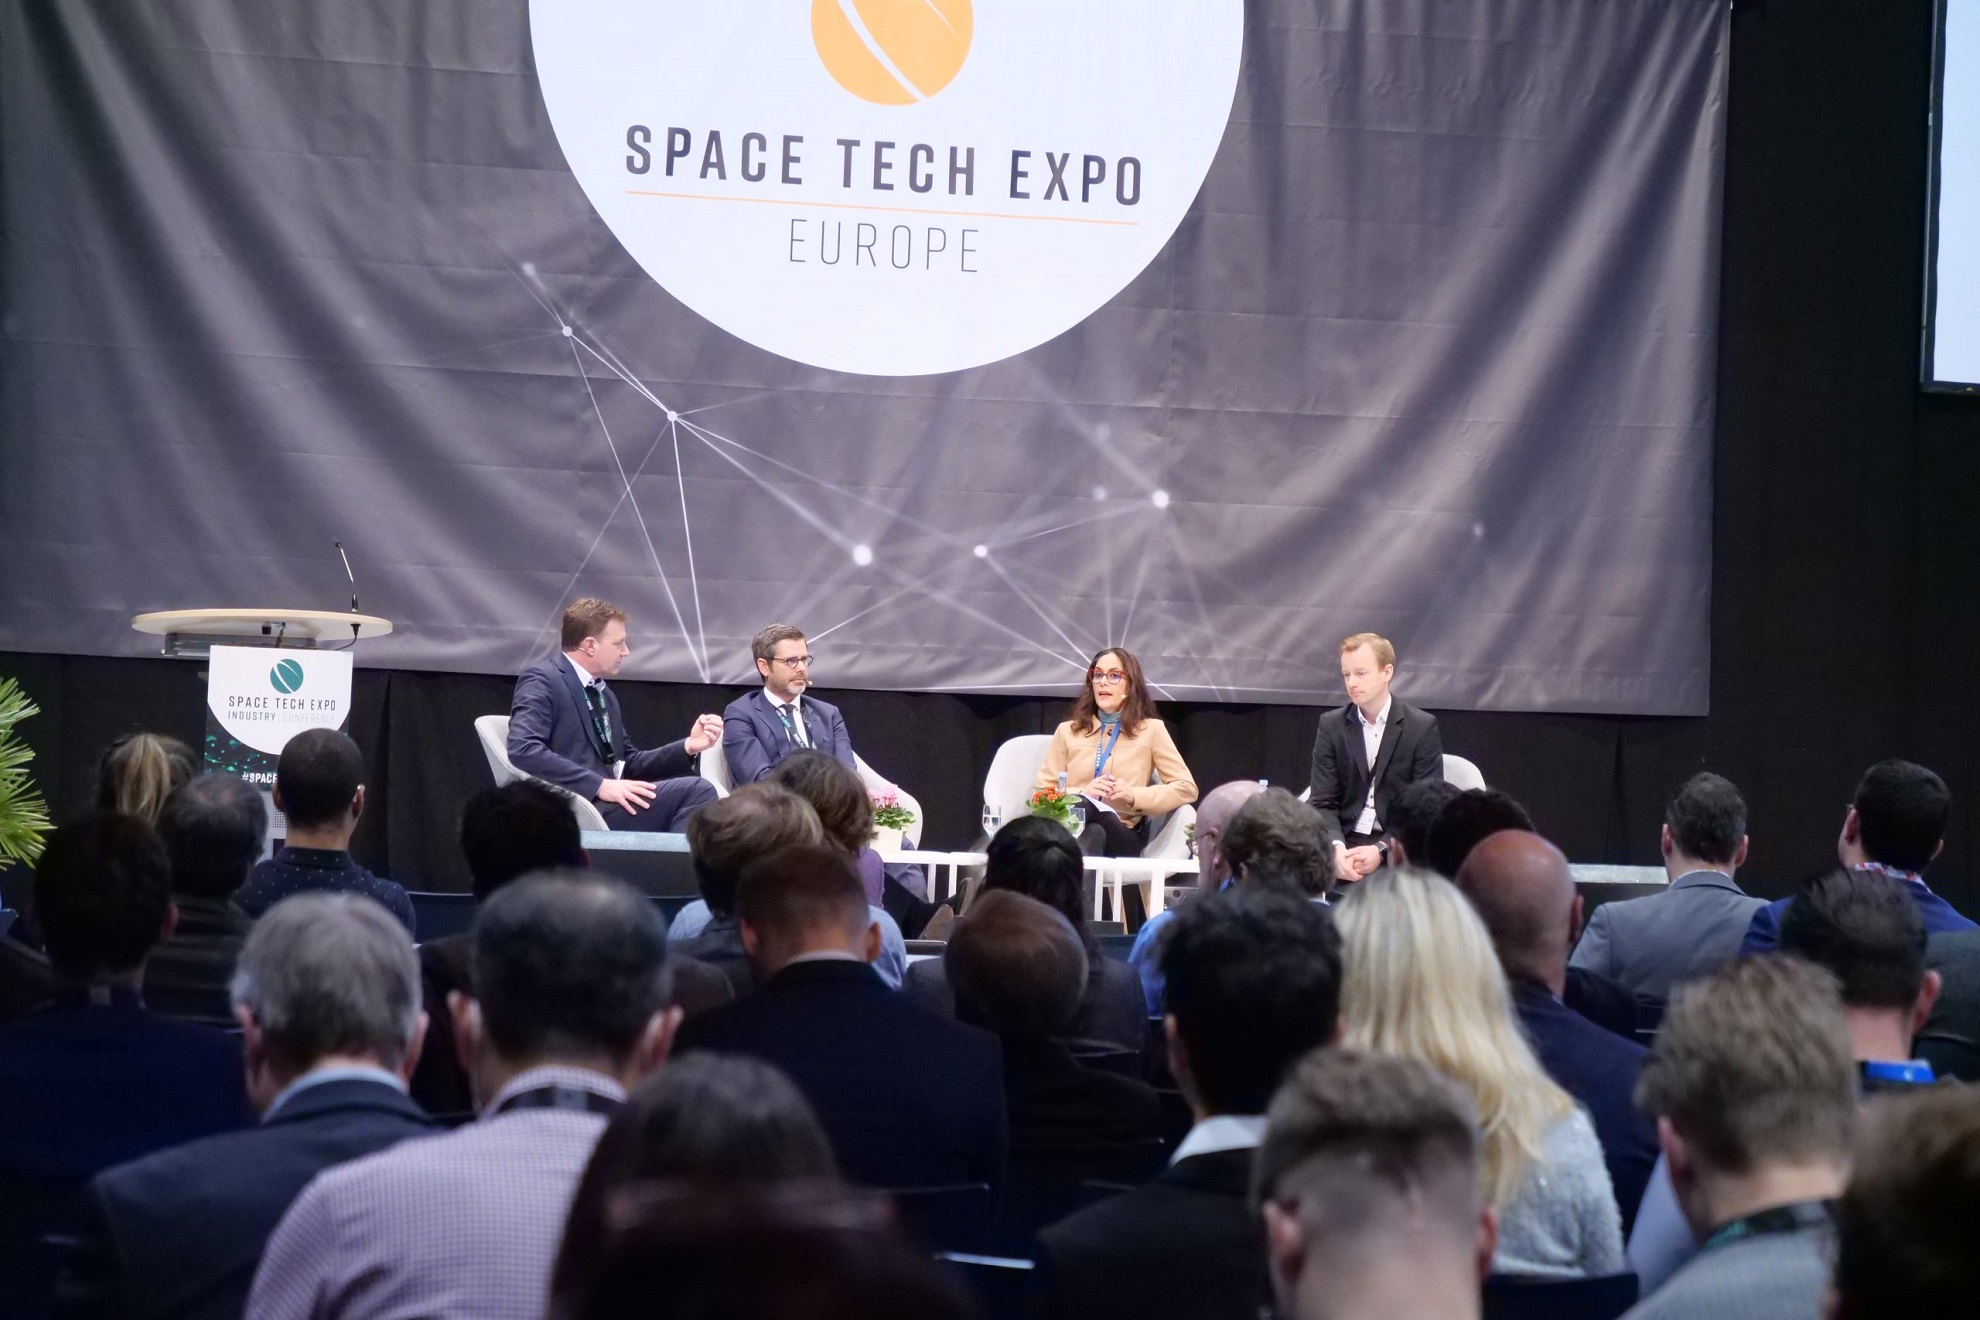 Foto: Sitzung der Industriekonferenz auf der Space Tech Expo Europe 2022. | Smarter Shows